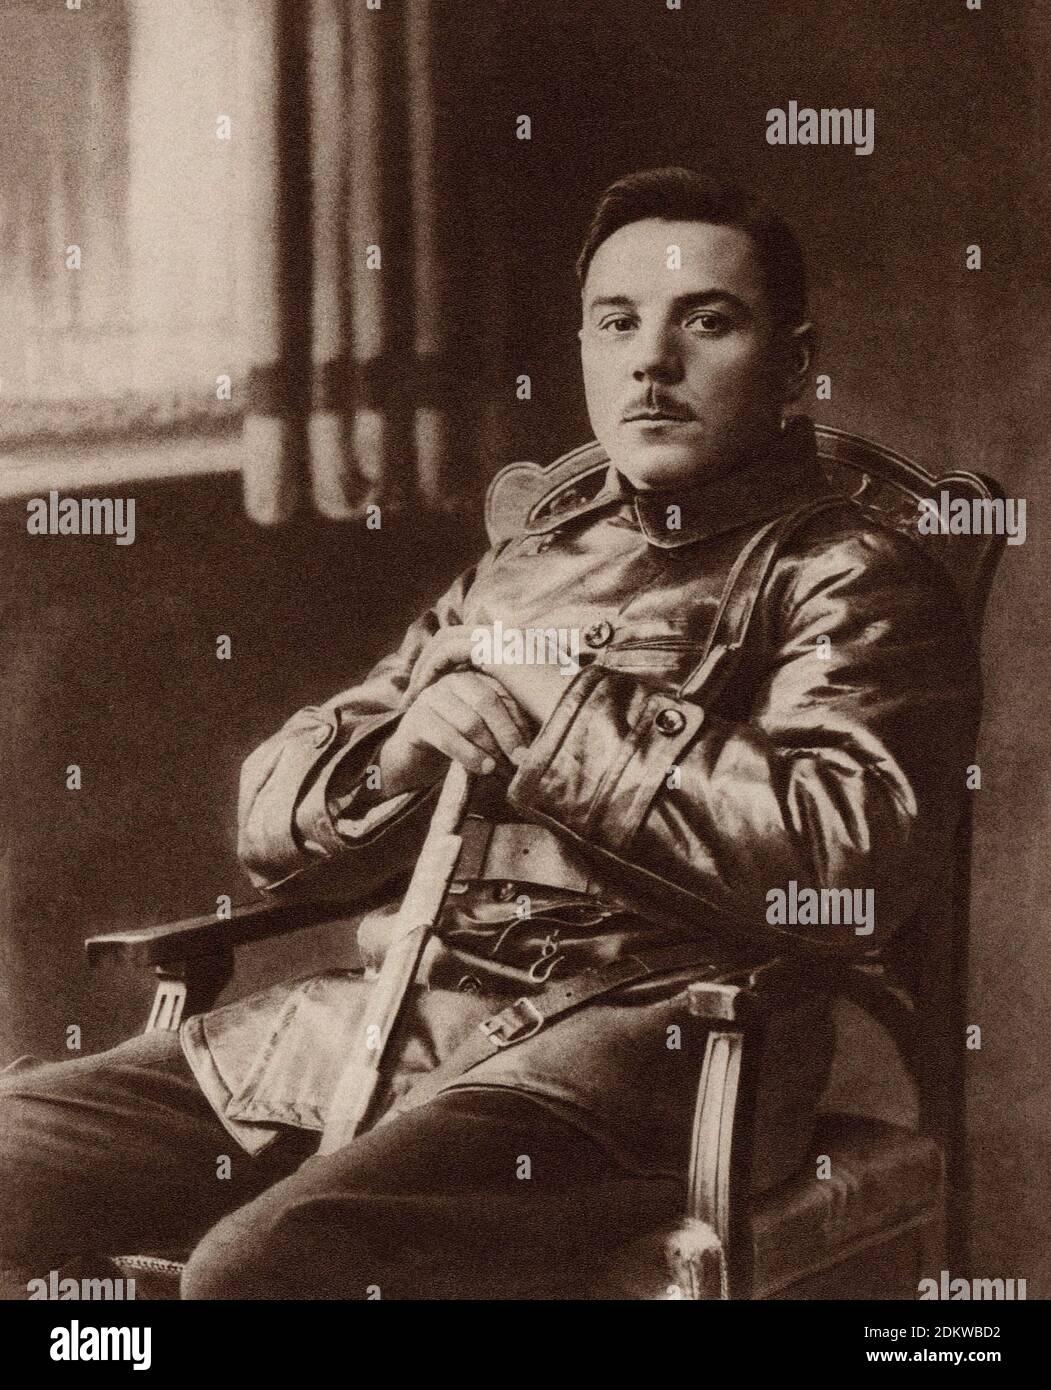 Archivfoto von Klim Woroshilov. Russische Bürgerkriegszeit. 1919 Klim Woroschilow (1881 – 1969), war ein prominenter sowjetischer Militäroffizier und Politiker Stockfoto